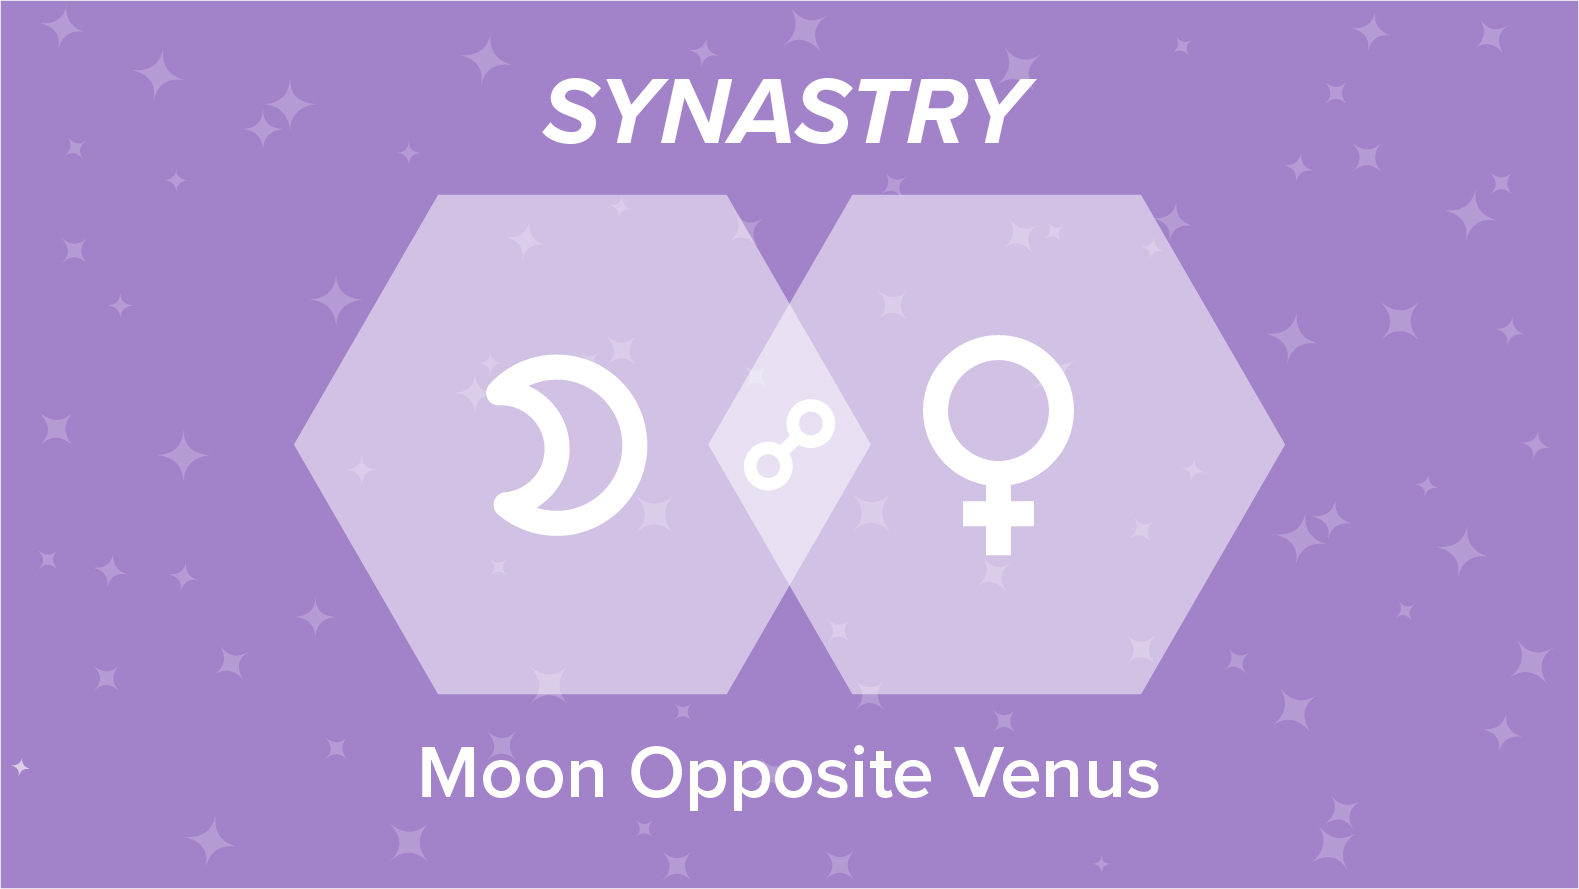 Moon Opposite Venus Synastry